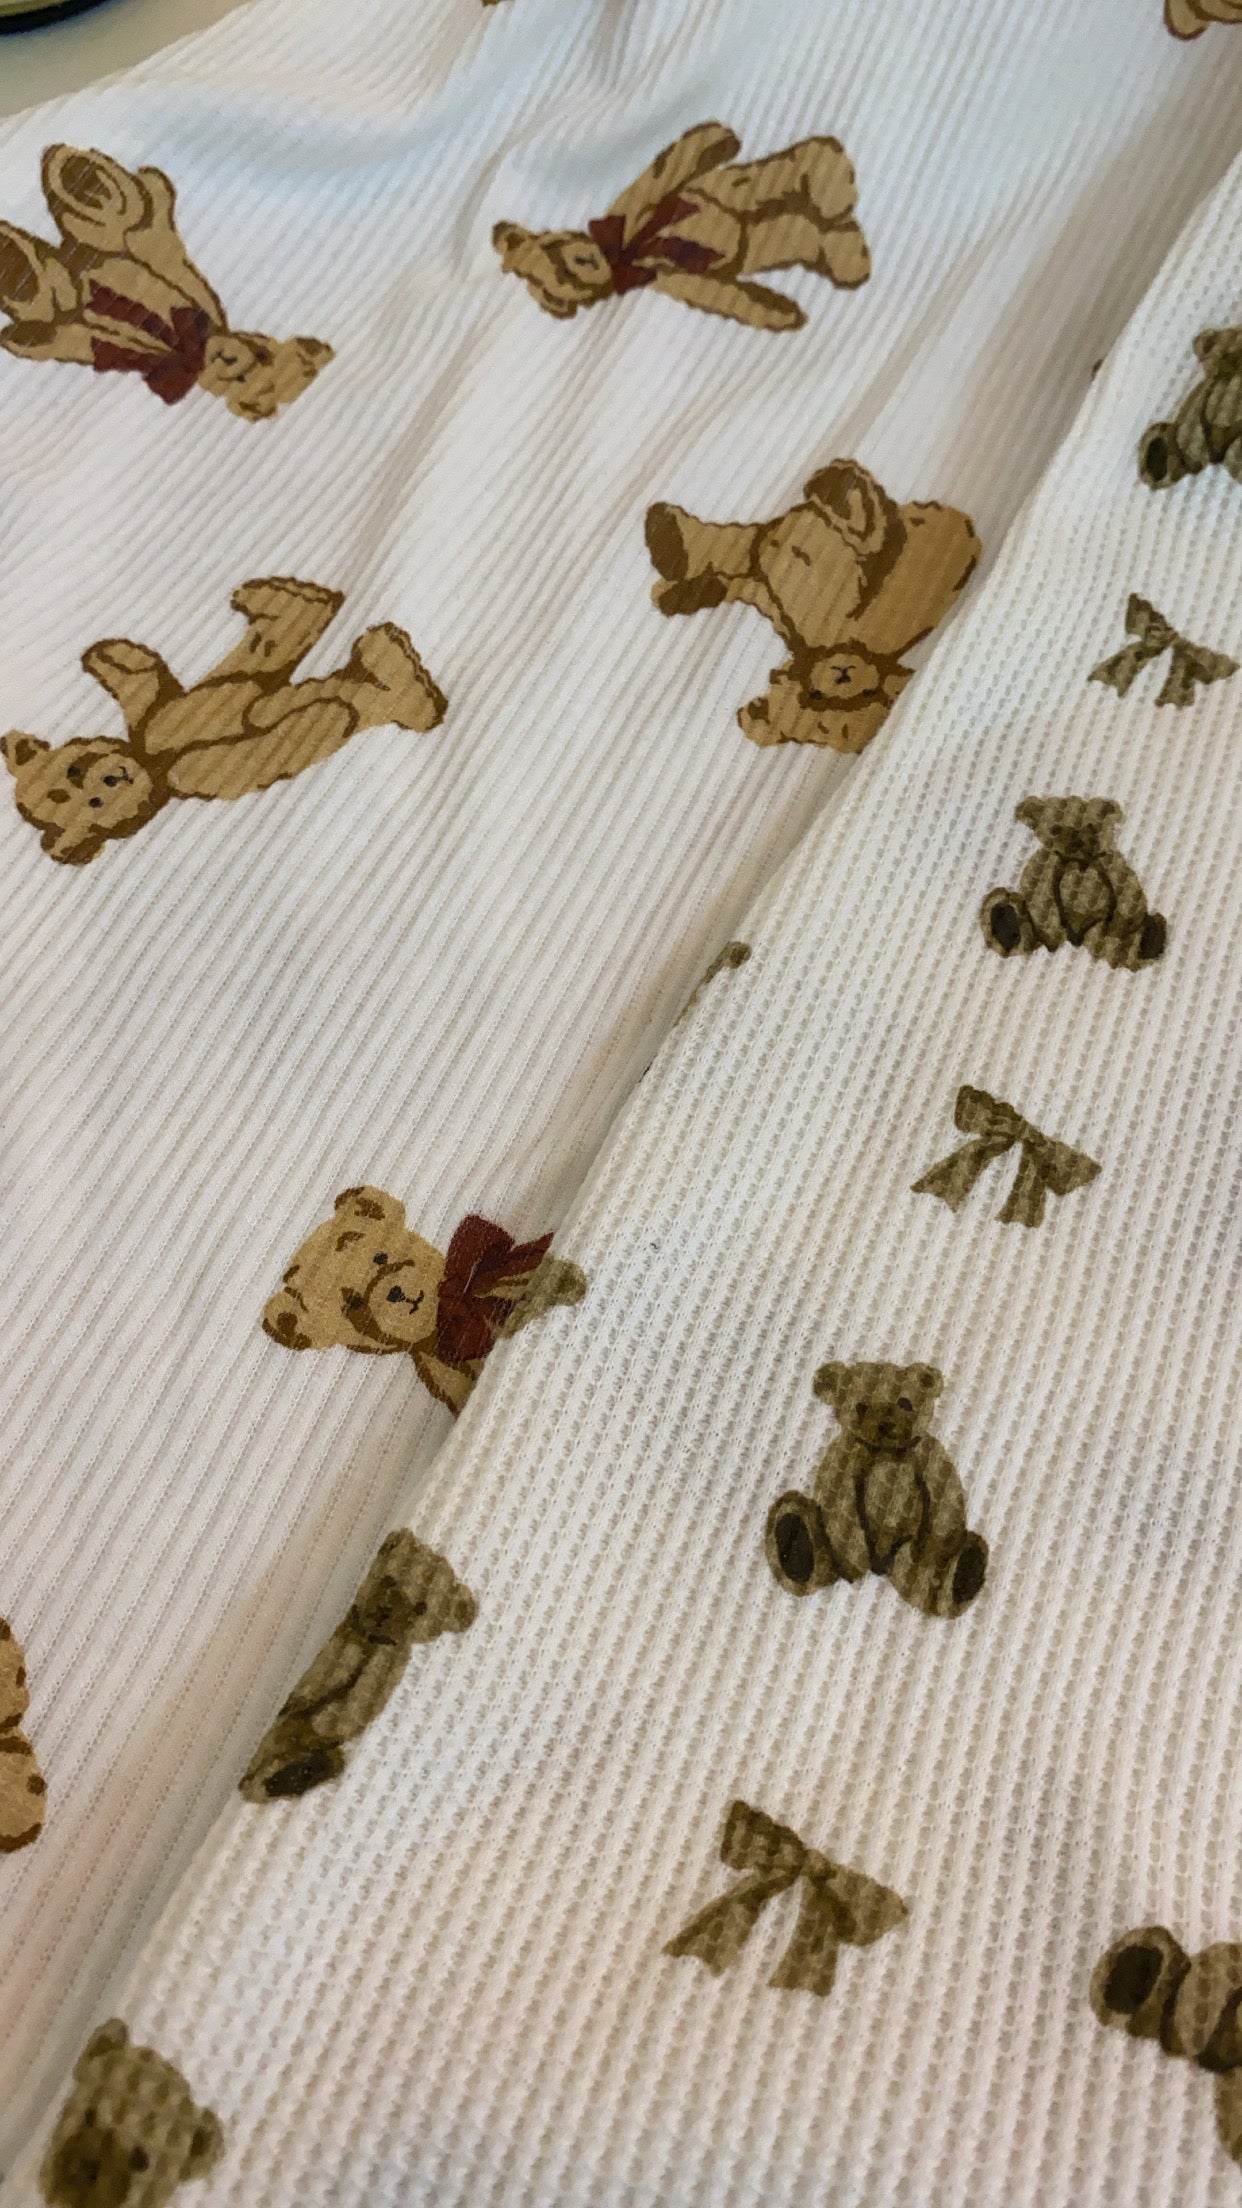 Teddy bear sleepwear in small bear